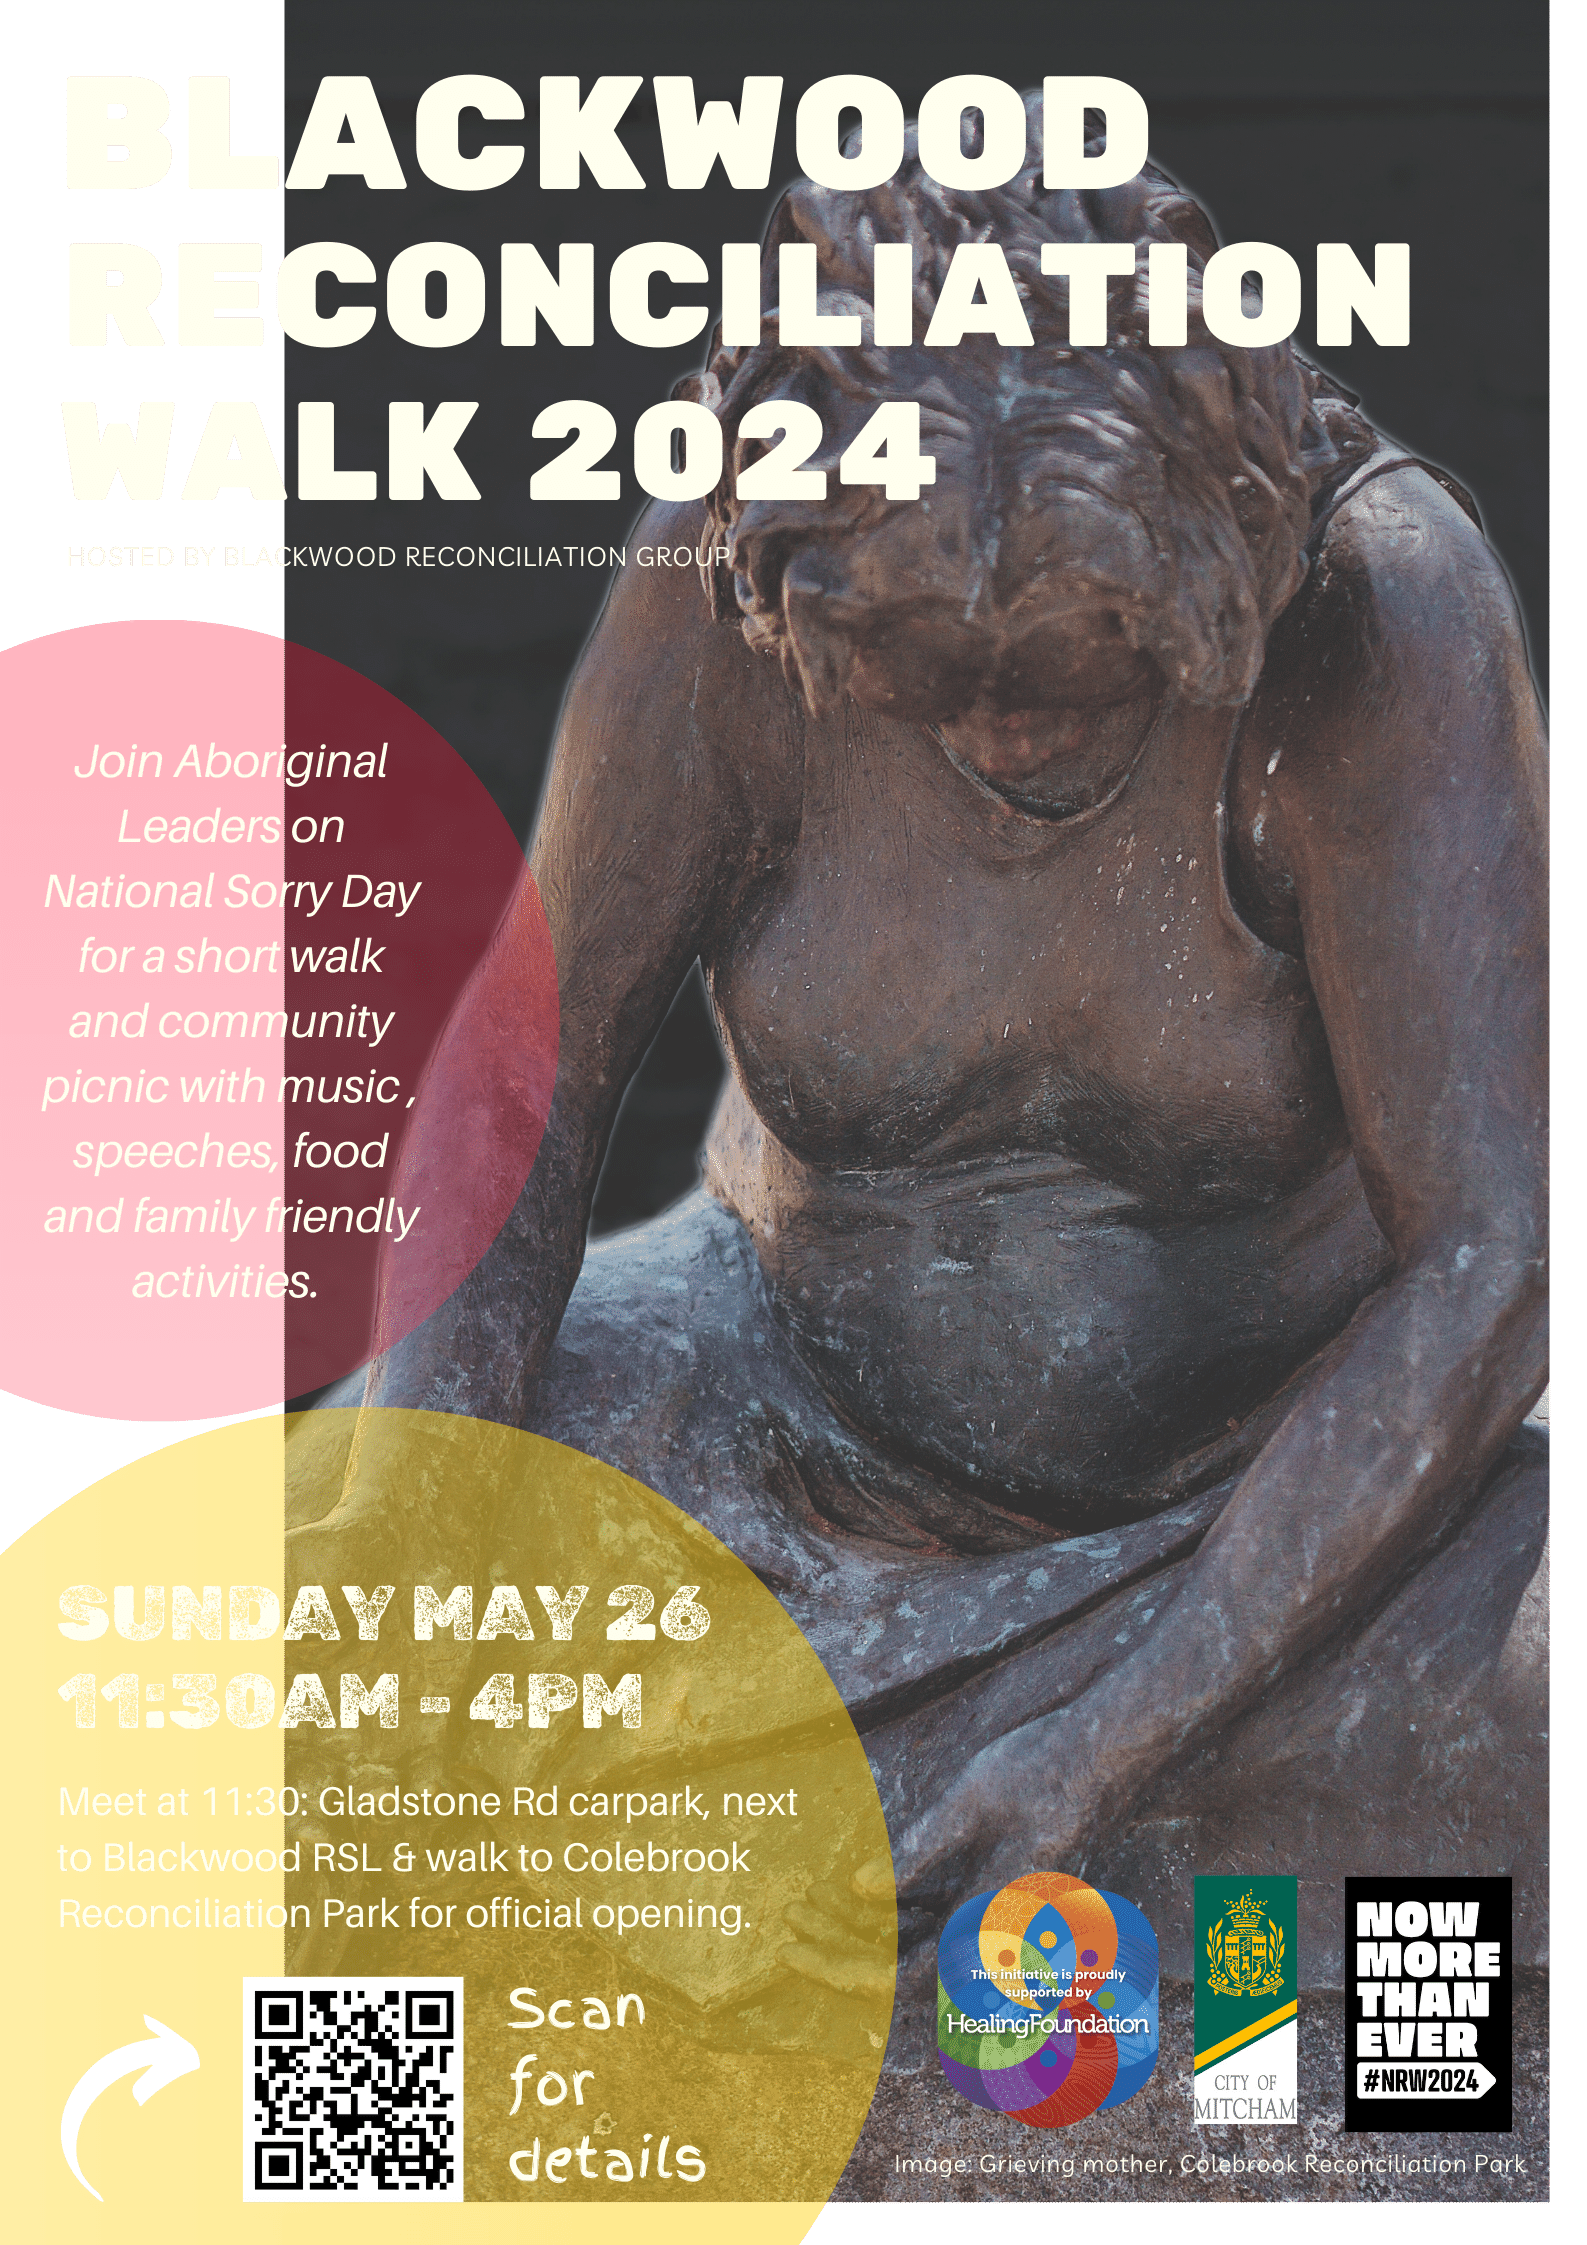 Blackwood Reconciliation Walk 2024